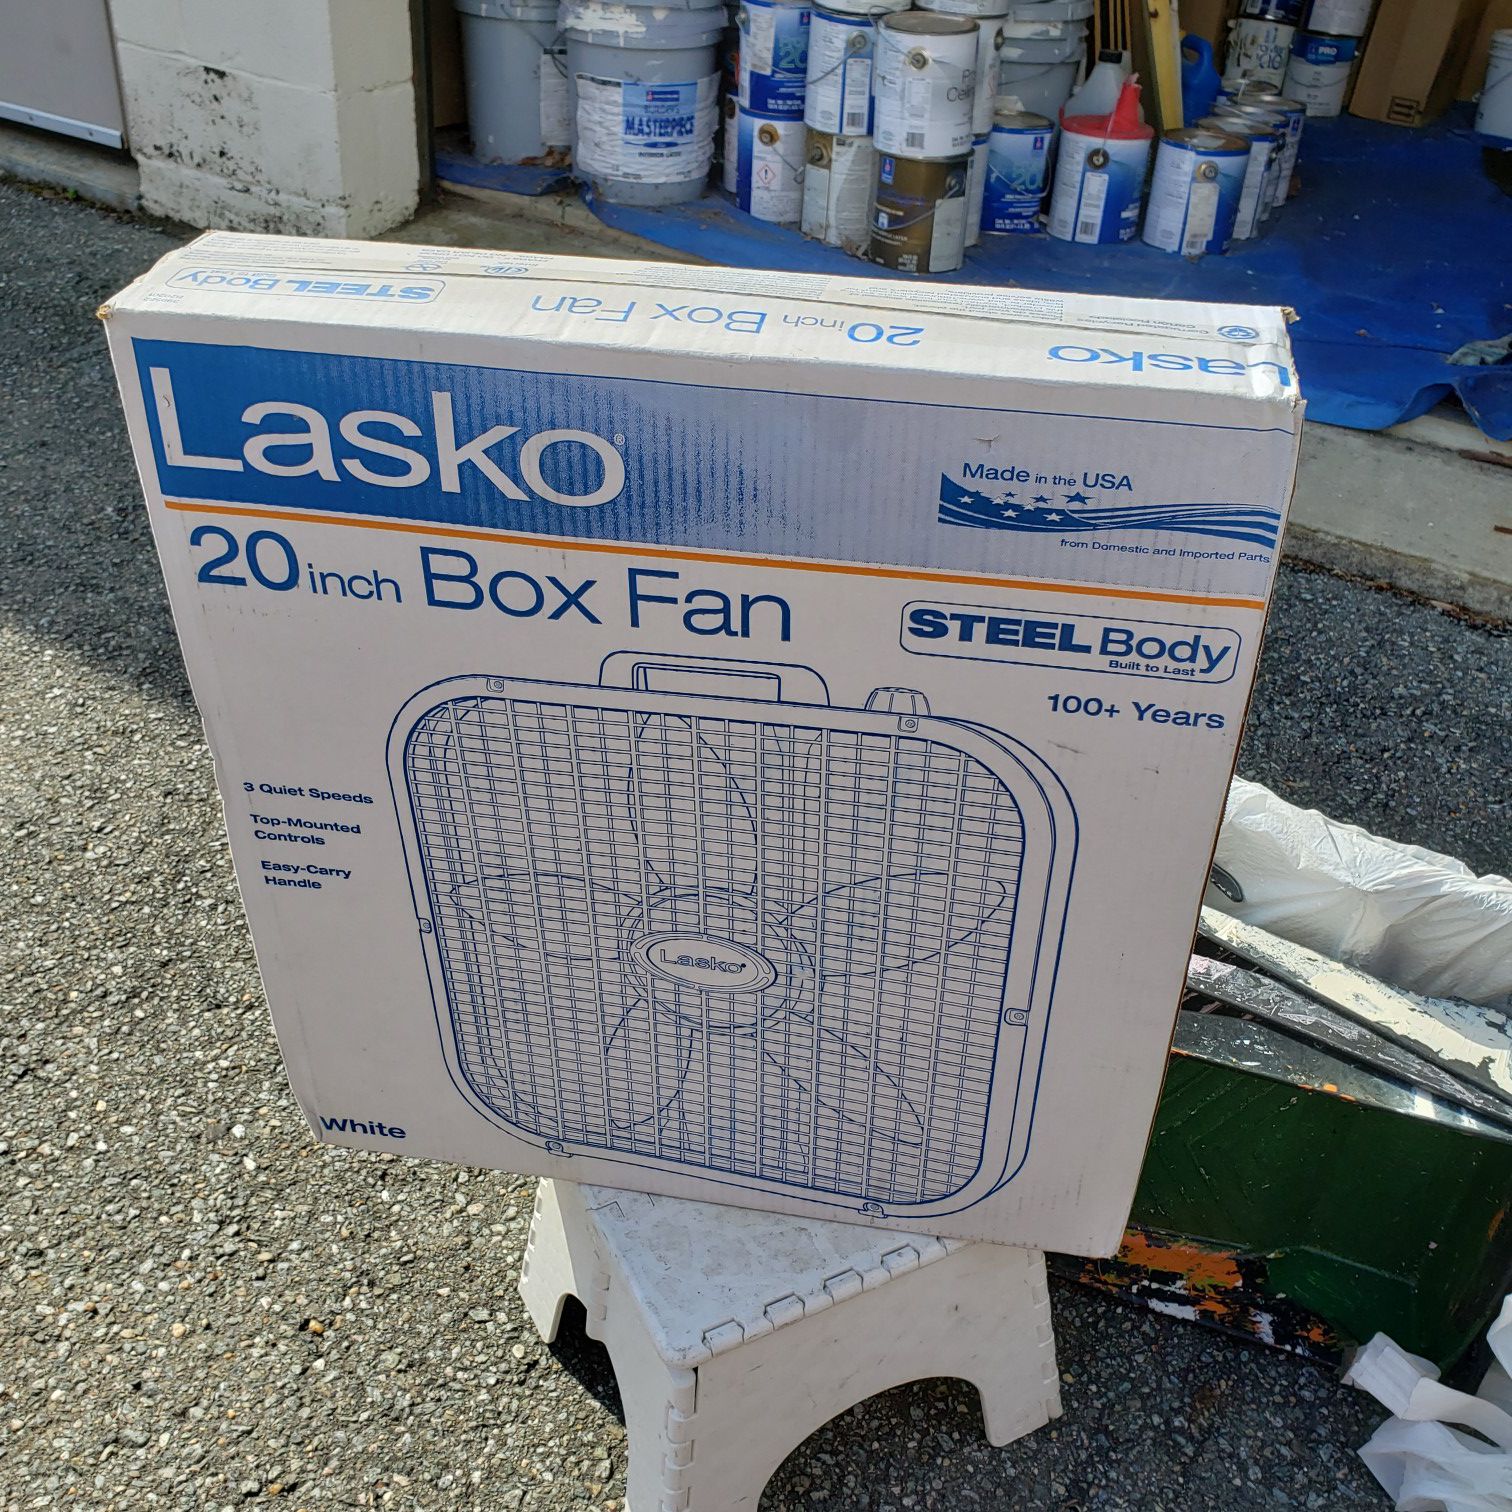 New Lasko 20 inch Box Fan